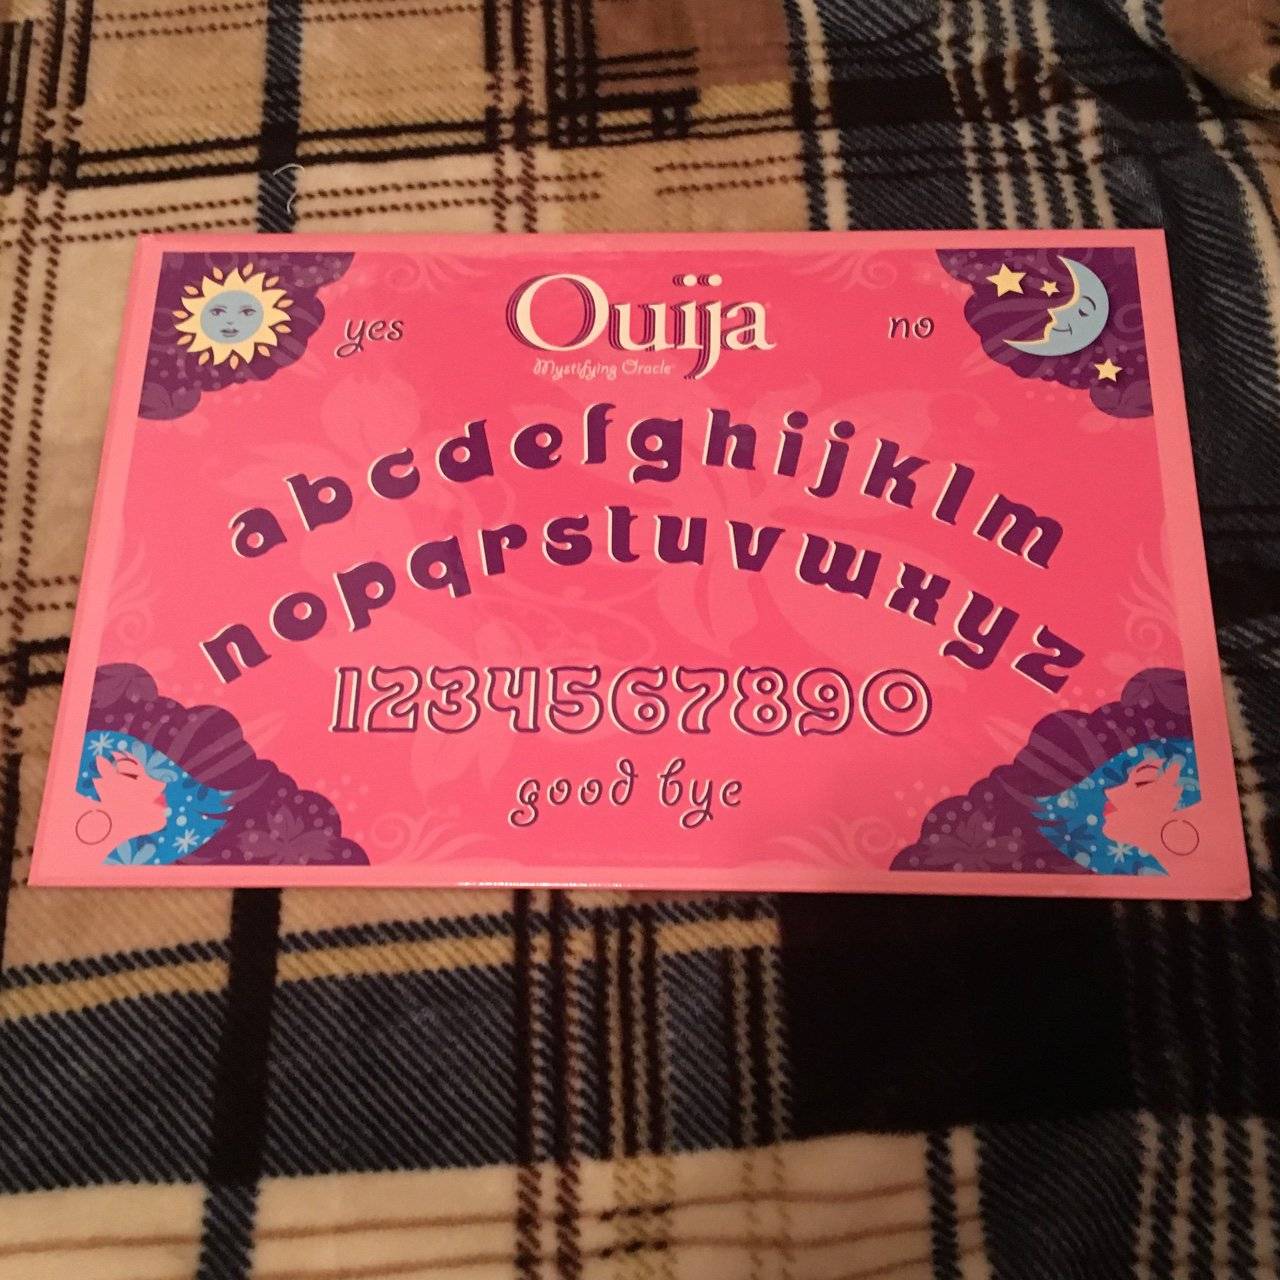 Tante polemiche per Ouija, il nuovo gioco della Hasbro. Secondo alcuni il gioco non farebbe bene ai bambini ma al contrario portebbe disturbi mentali